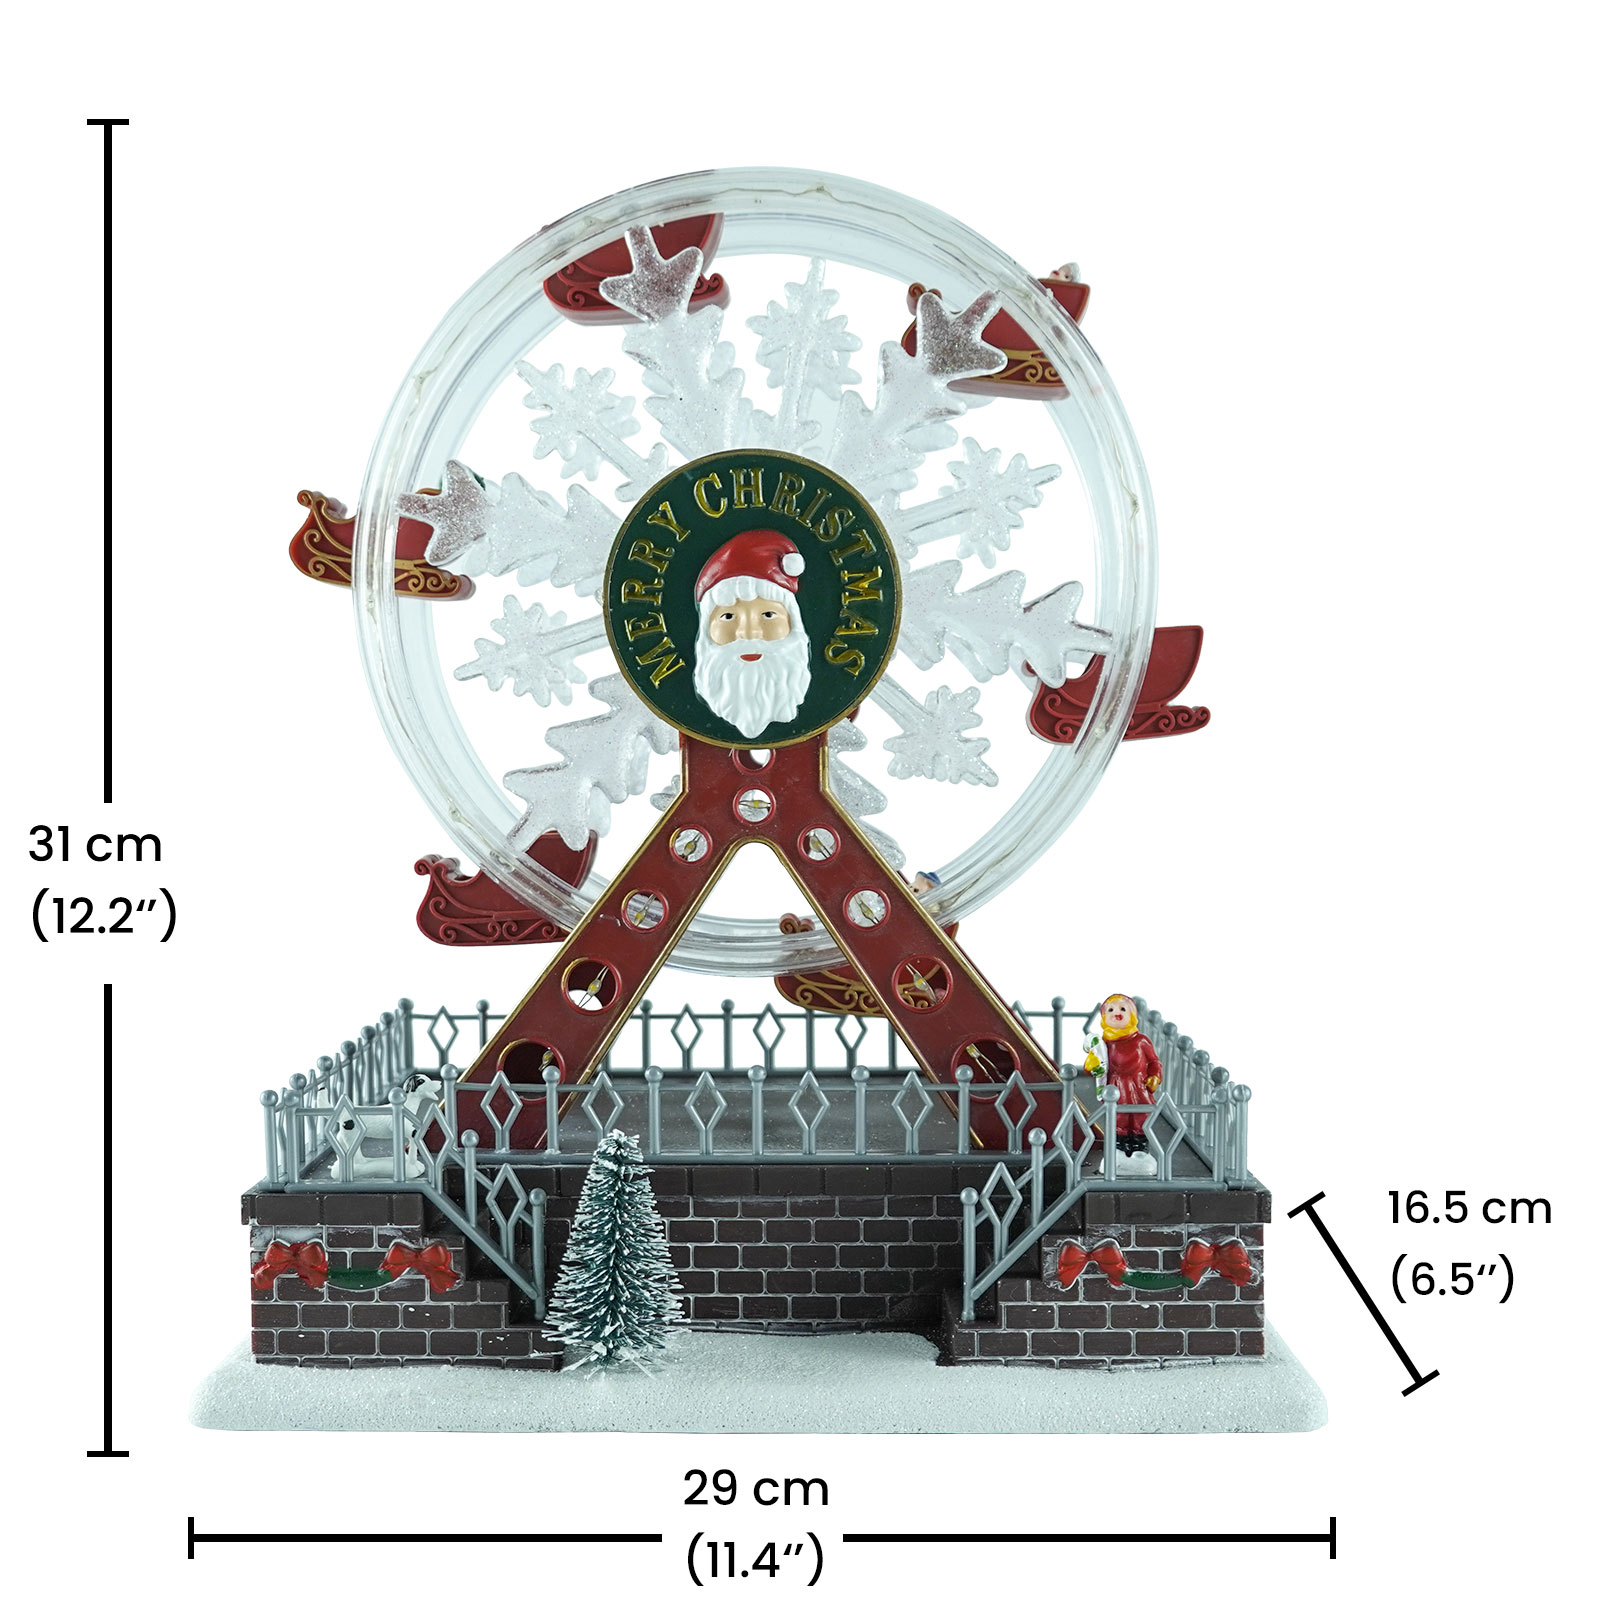 Customized Mult flashing Color Led illuminated Xmas Ferris wheel Scene musical Christmas decoration with Santa face